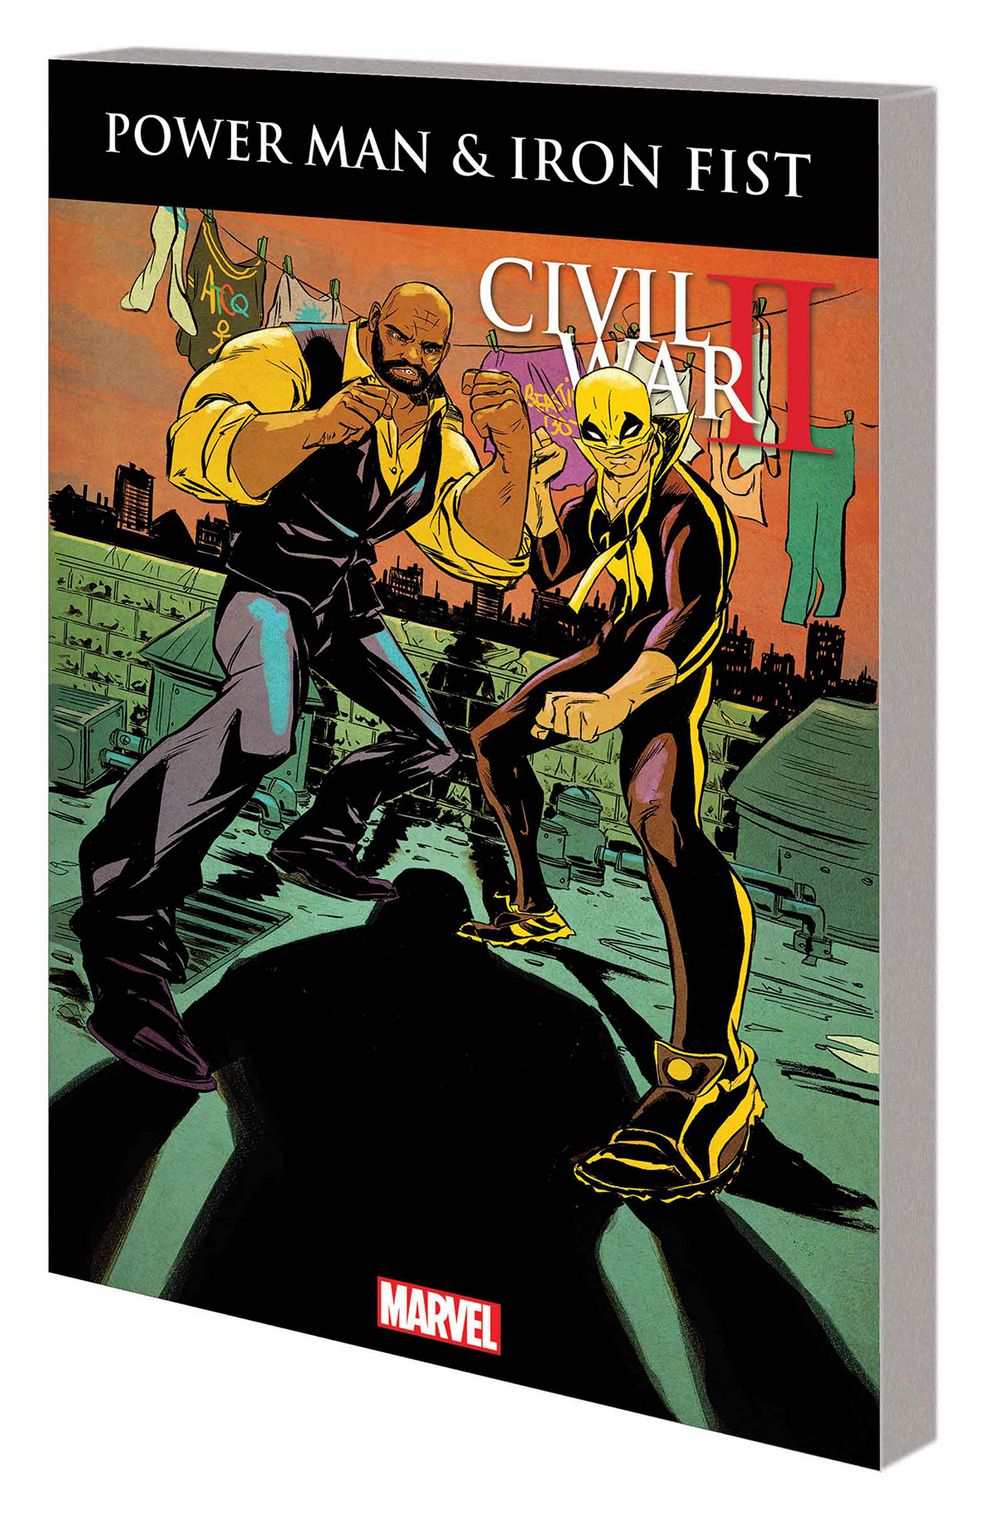 Power Man and Iron Fist TP VOL 02 Civil War II